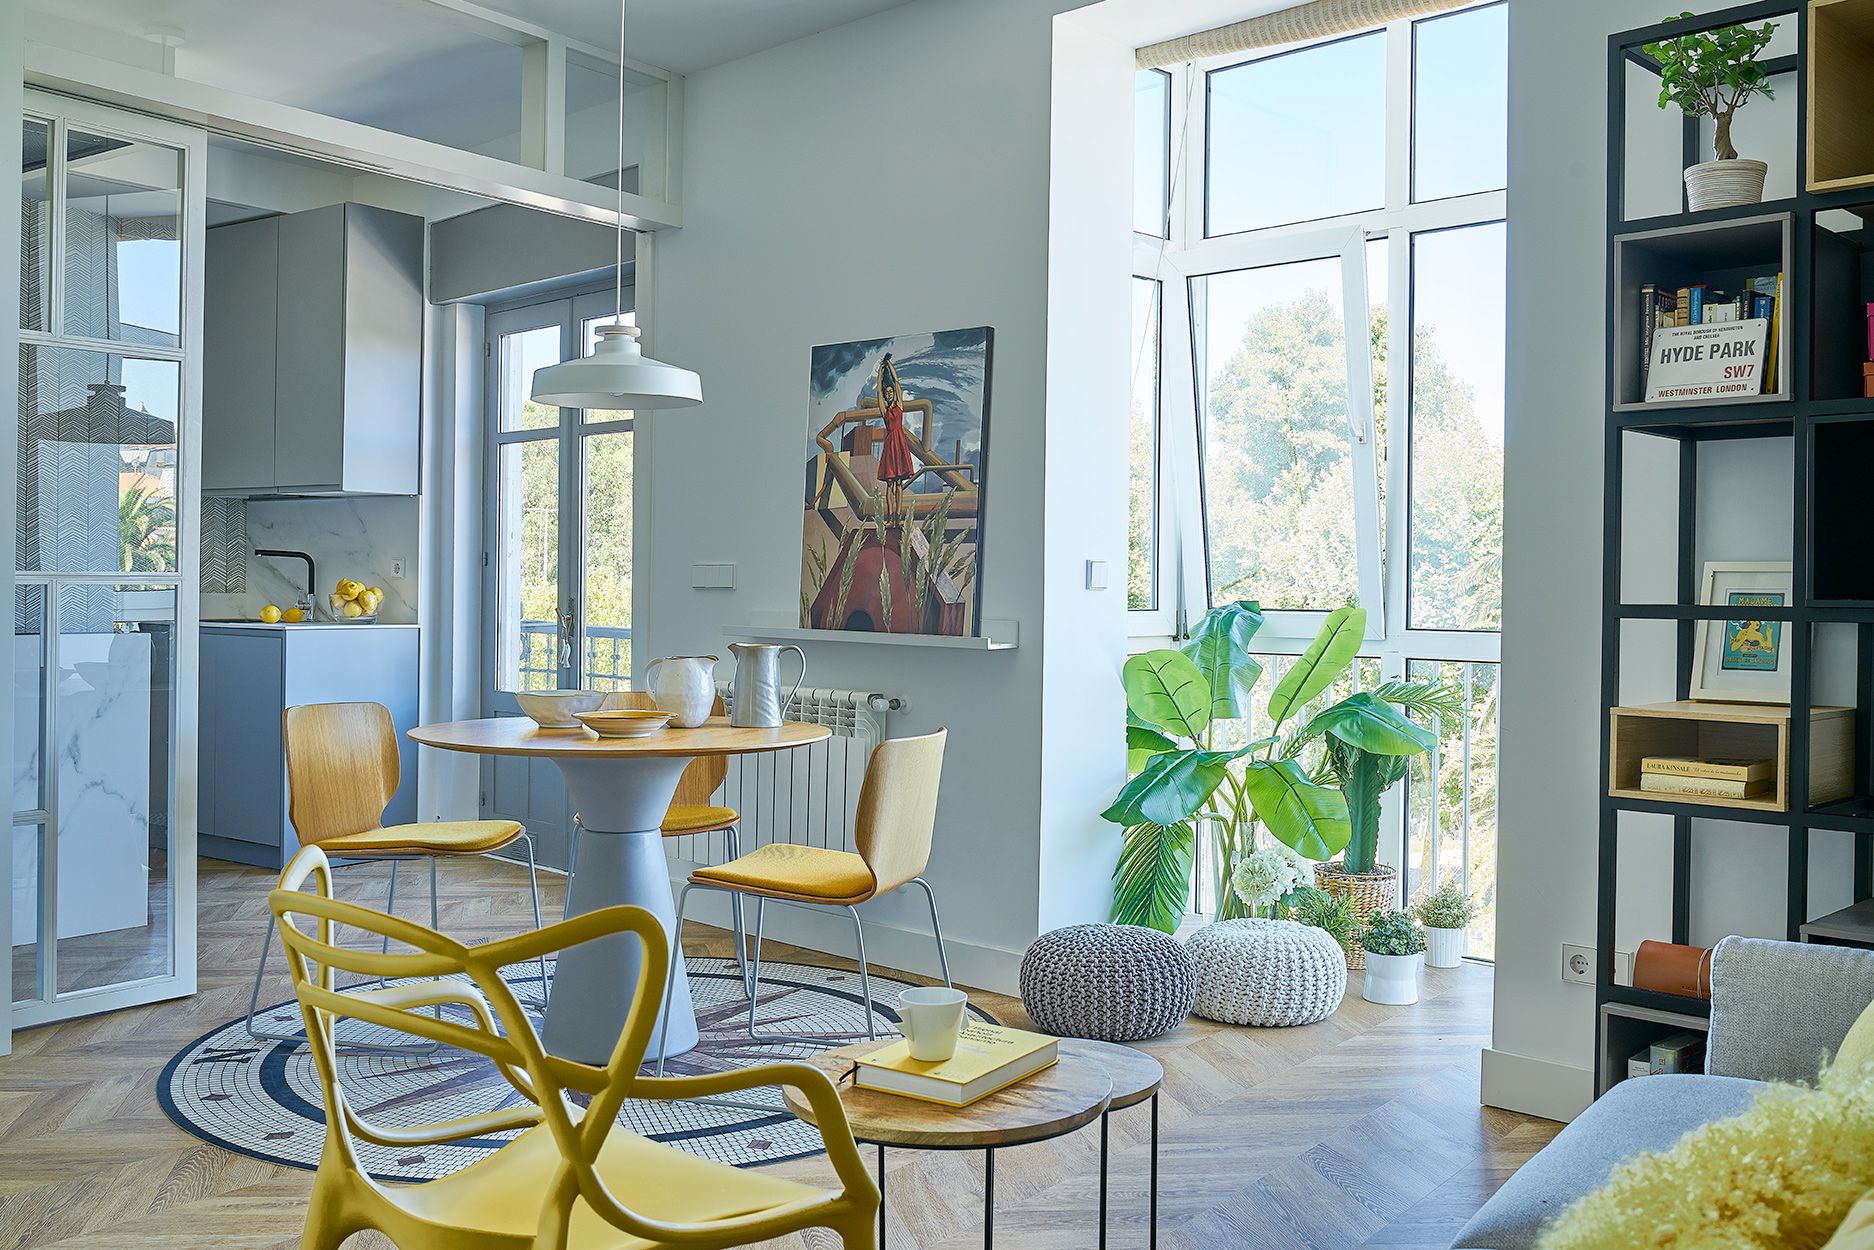 Contradicción Acuoso precoz Un piso moderno y joven decorado en gris y amarillo - Casas